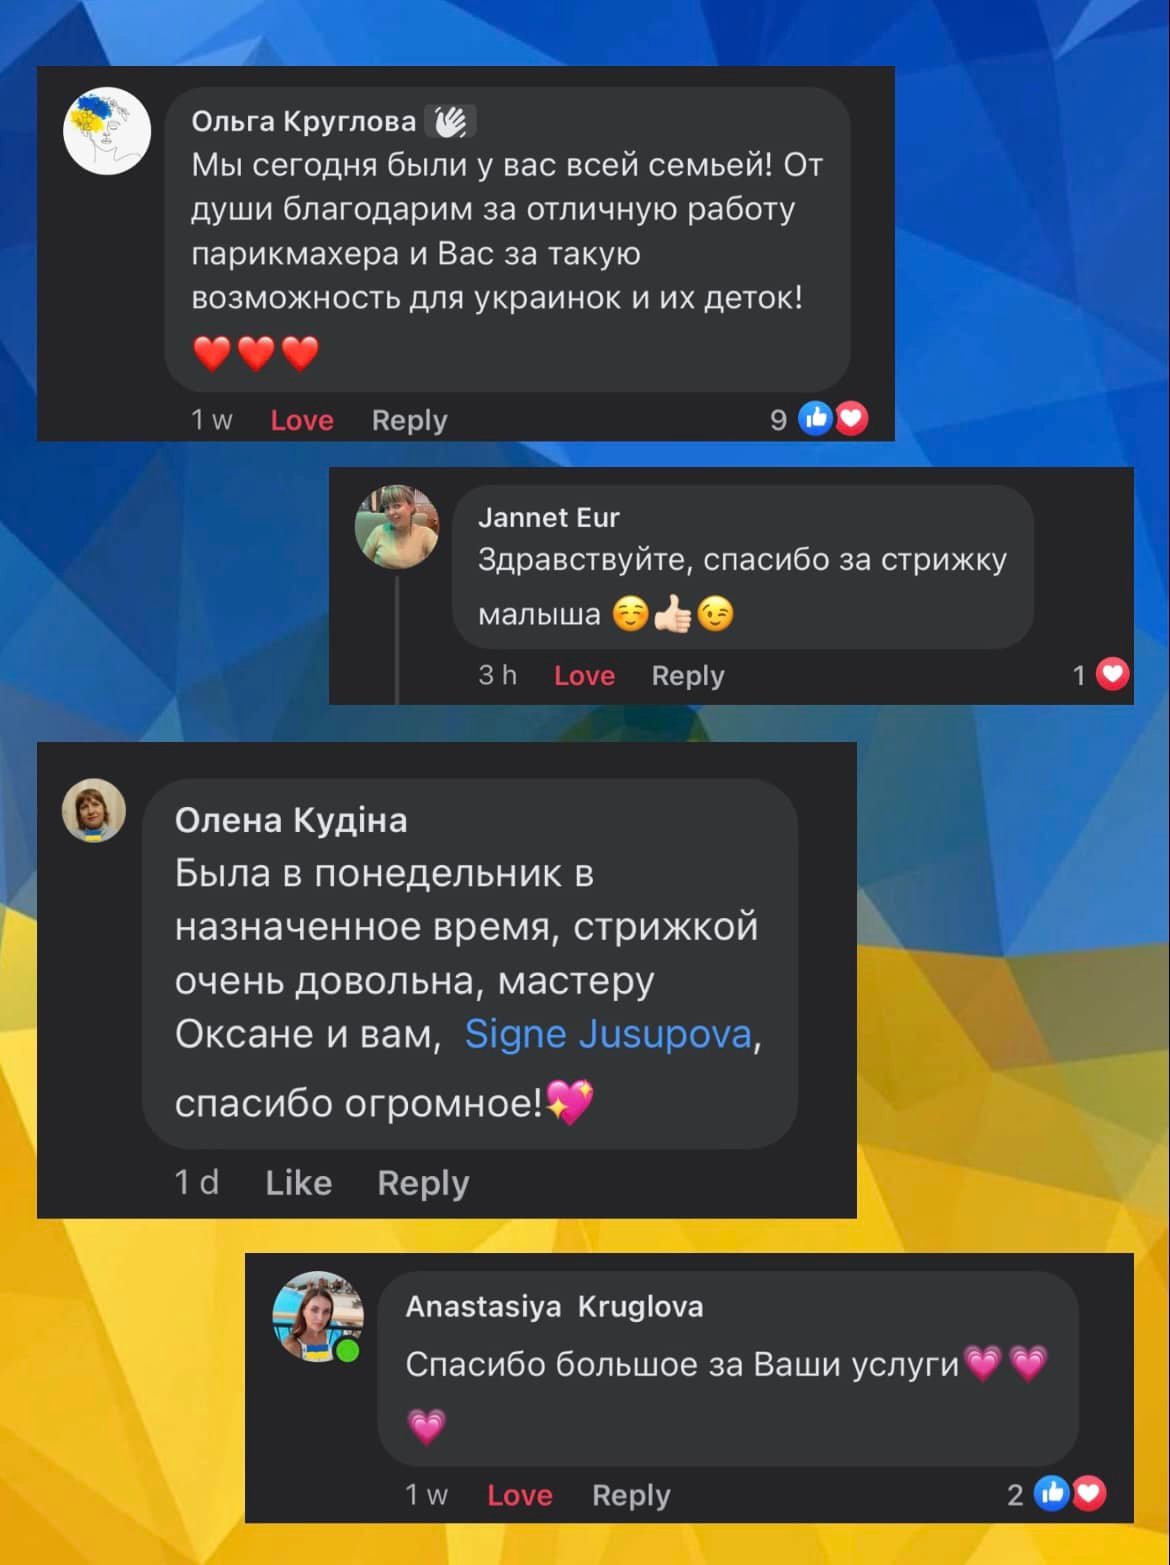 Отзывы украинских беженцев о бесплатных стрижках. Фото предоставлено салоном Nevi.